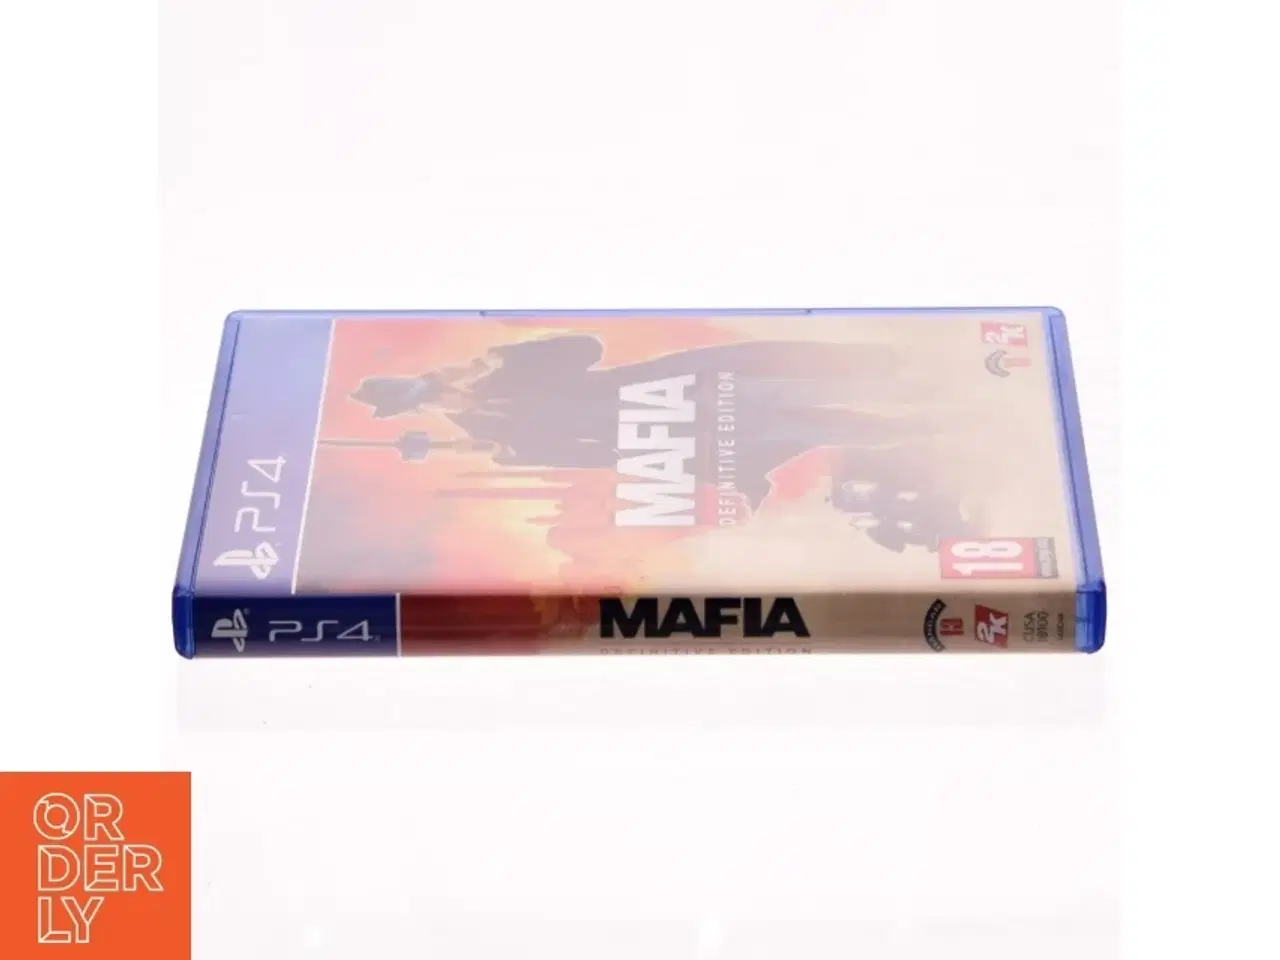 Billede 2 - Mafia Definitve edition til PS4 fra Playstation